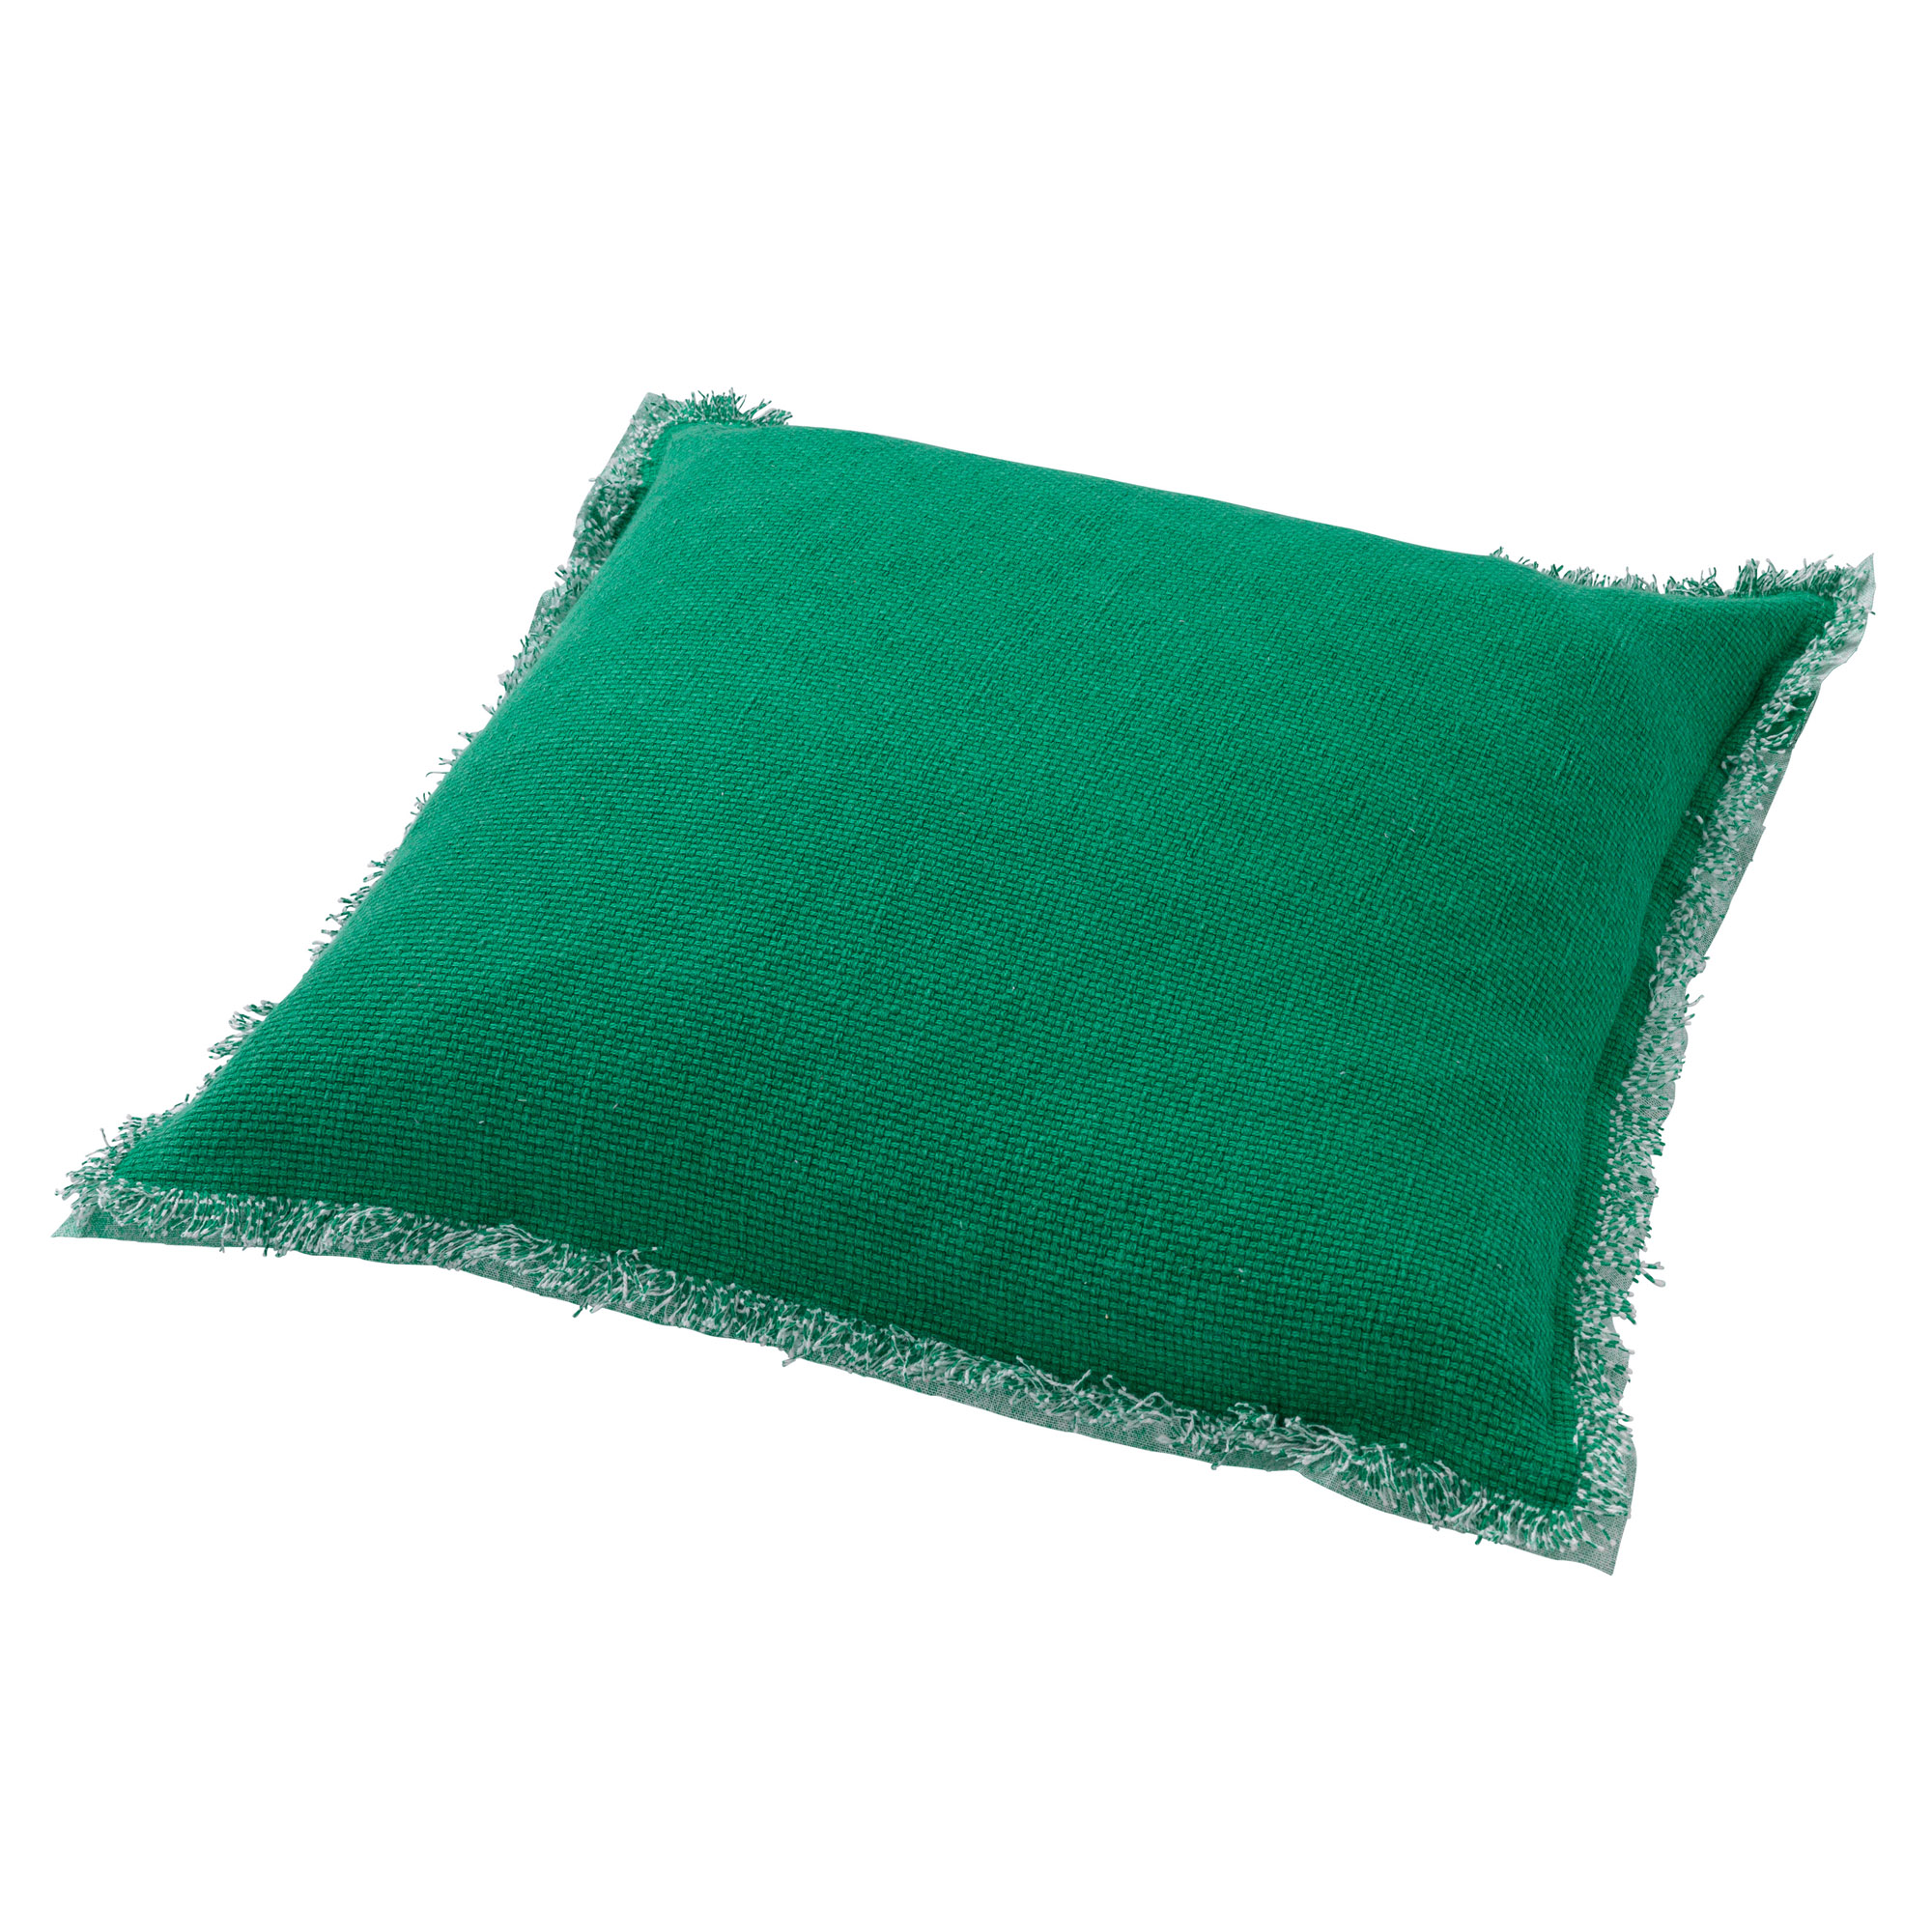 BURTO - Kussenhoes van gewassen katoen Emerald 60x60 cm - groen